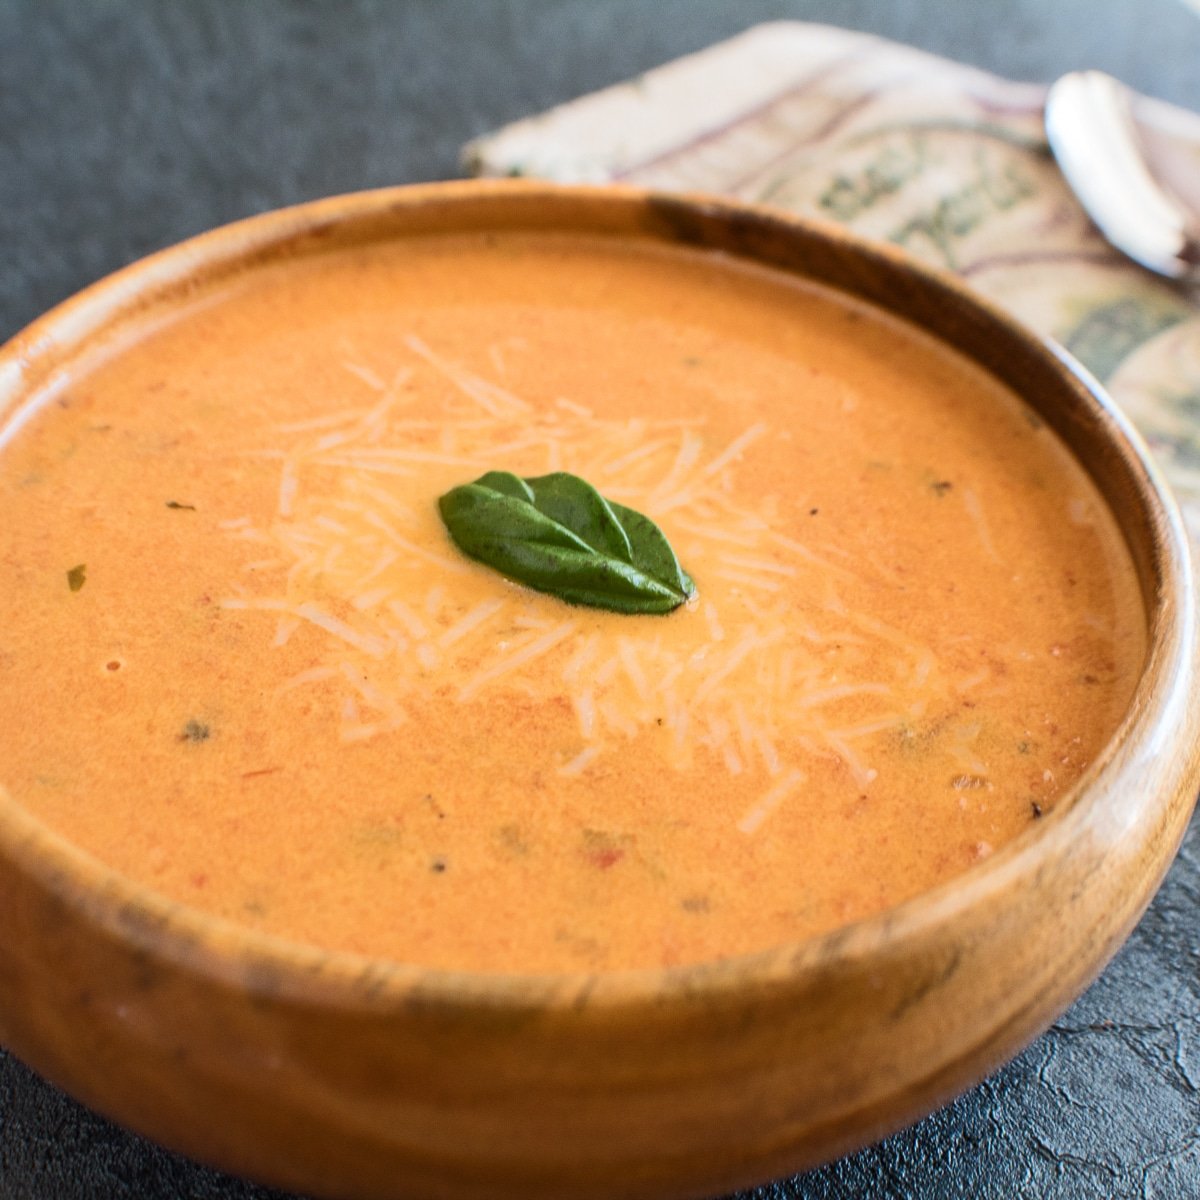 Sopa super cremosa de tomate assado com manjericão servida em tigela de madeira.